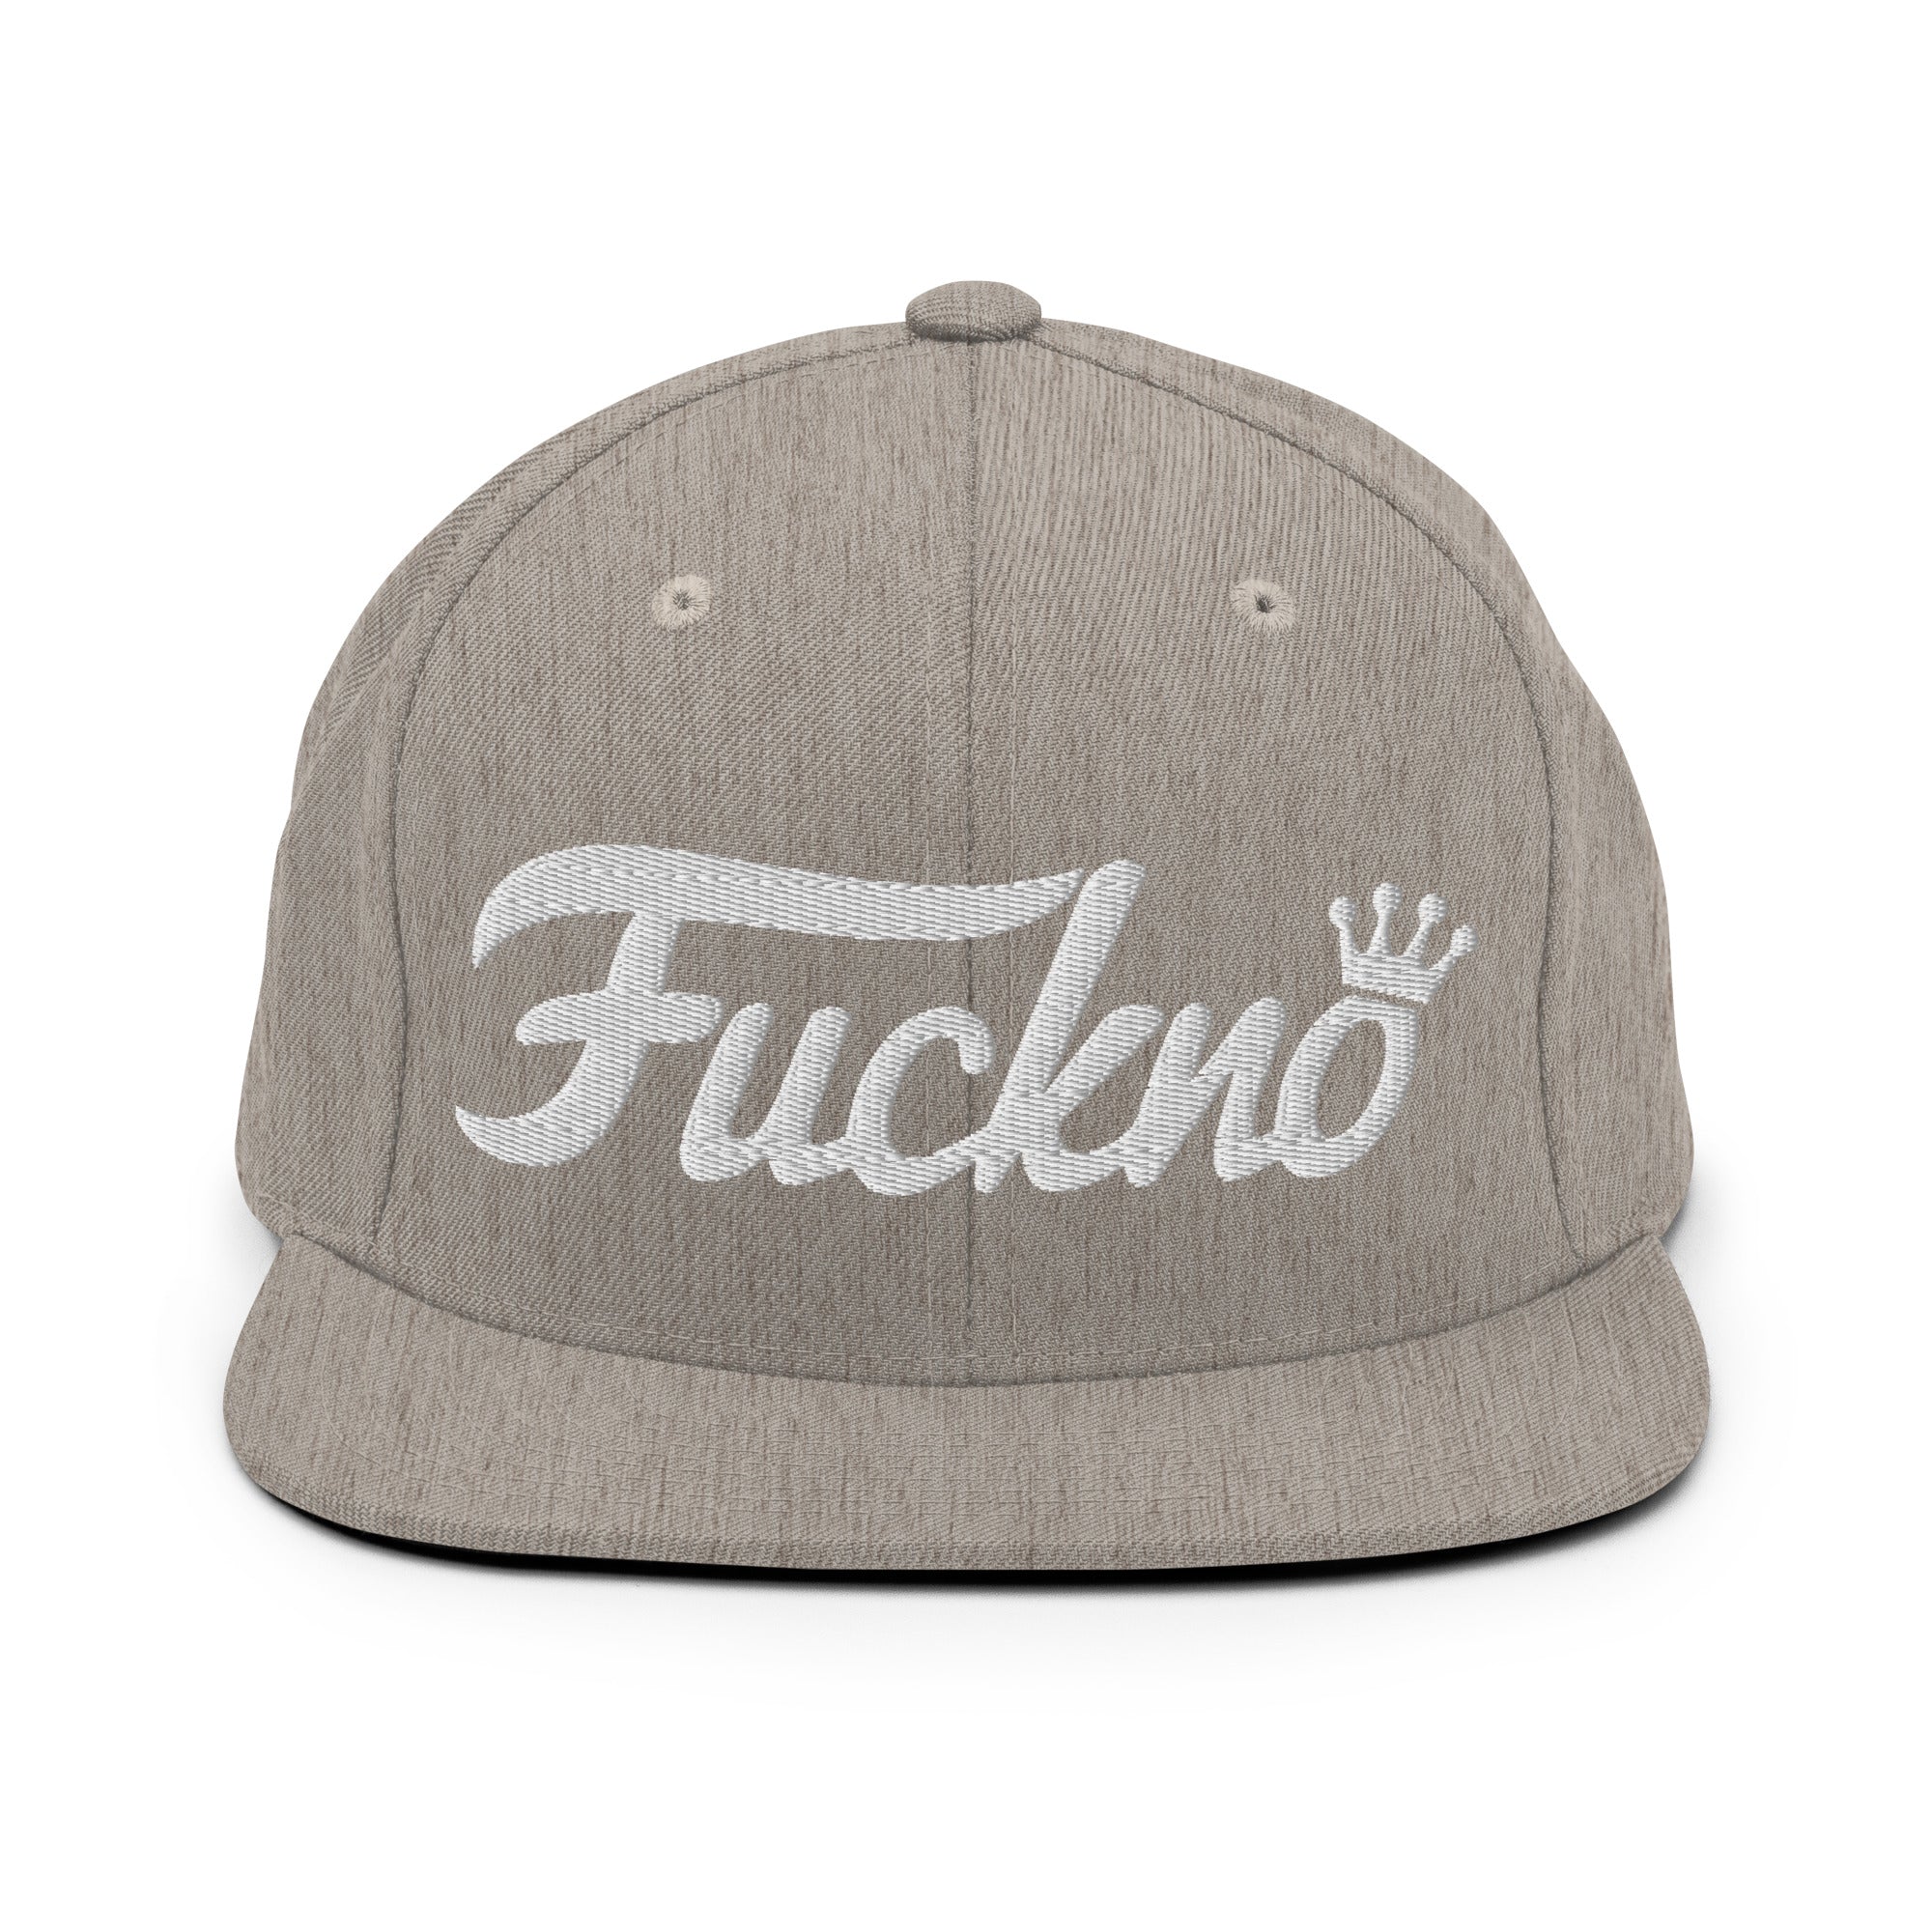 'fuck no' to Phunko Snapback Hat